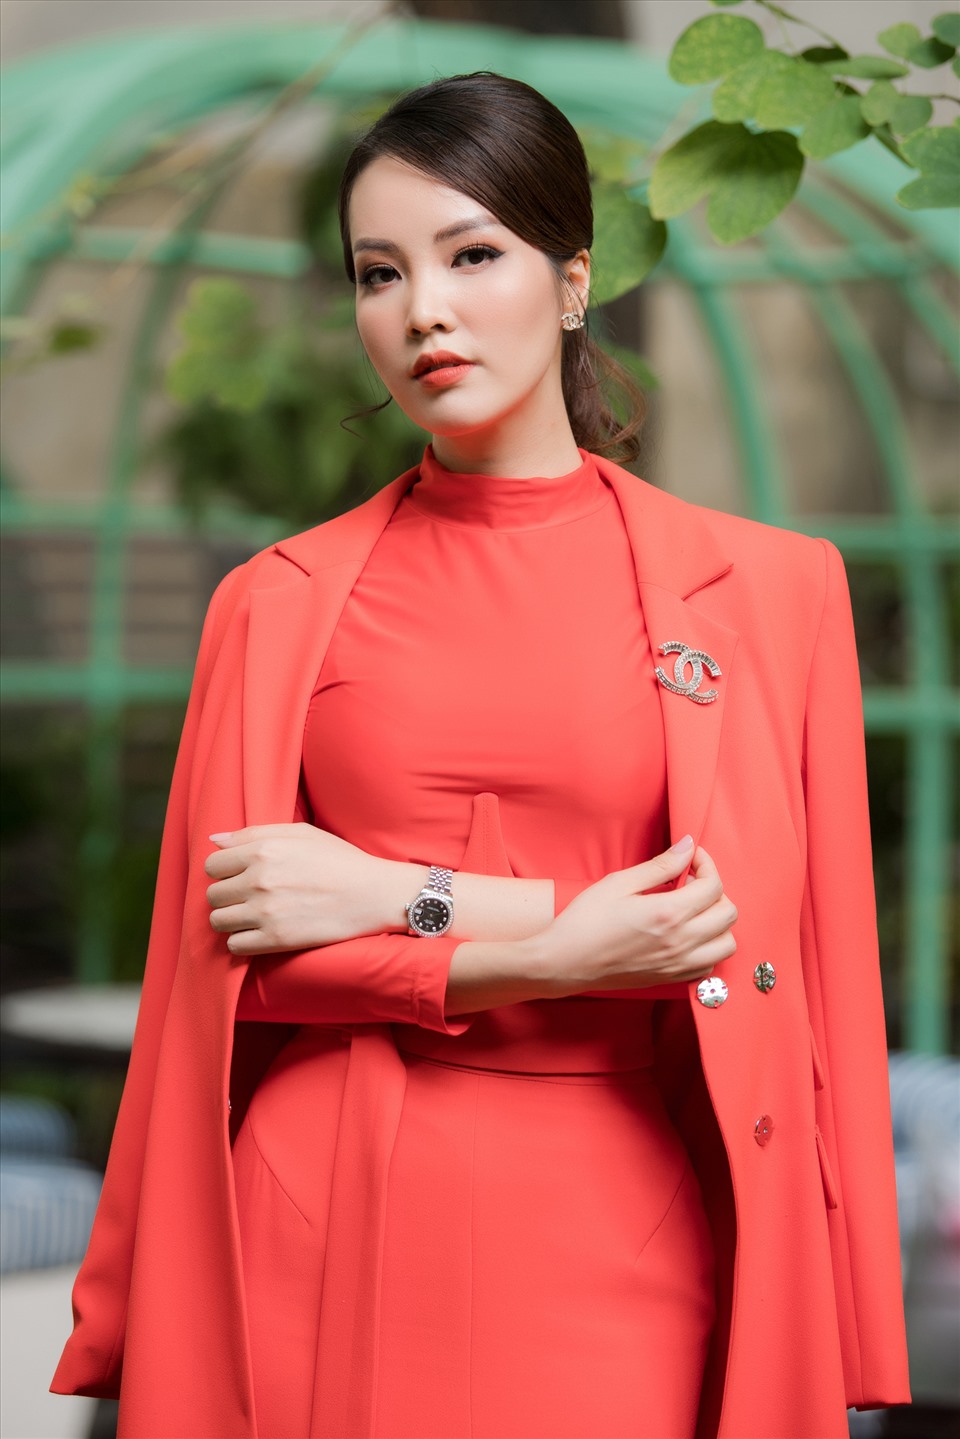 “Hoa hậu Việt Nam 2020 là cuộc thi duy nhất trong năm nay nên chúng tôi càng phải khắt khe hơn“, Thuỵ Vân chia sẻ. Ảnh: Toàn Vũ.